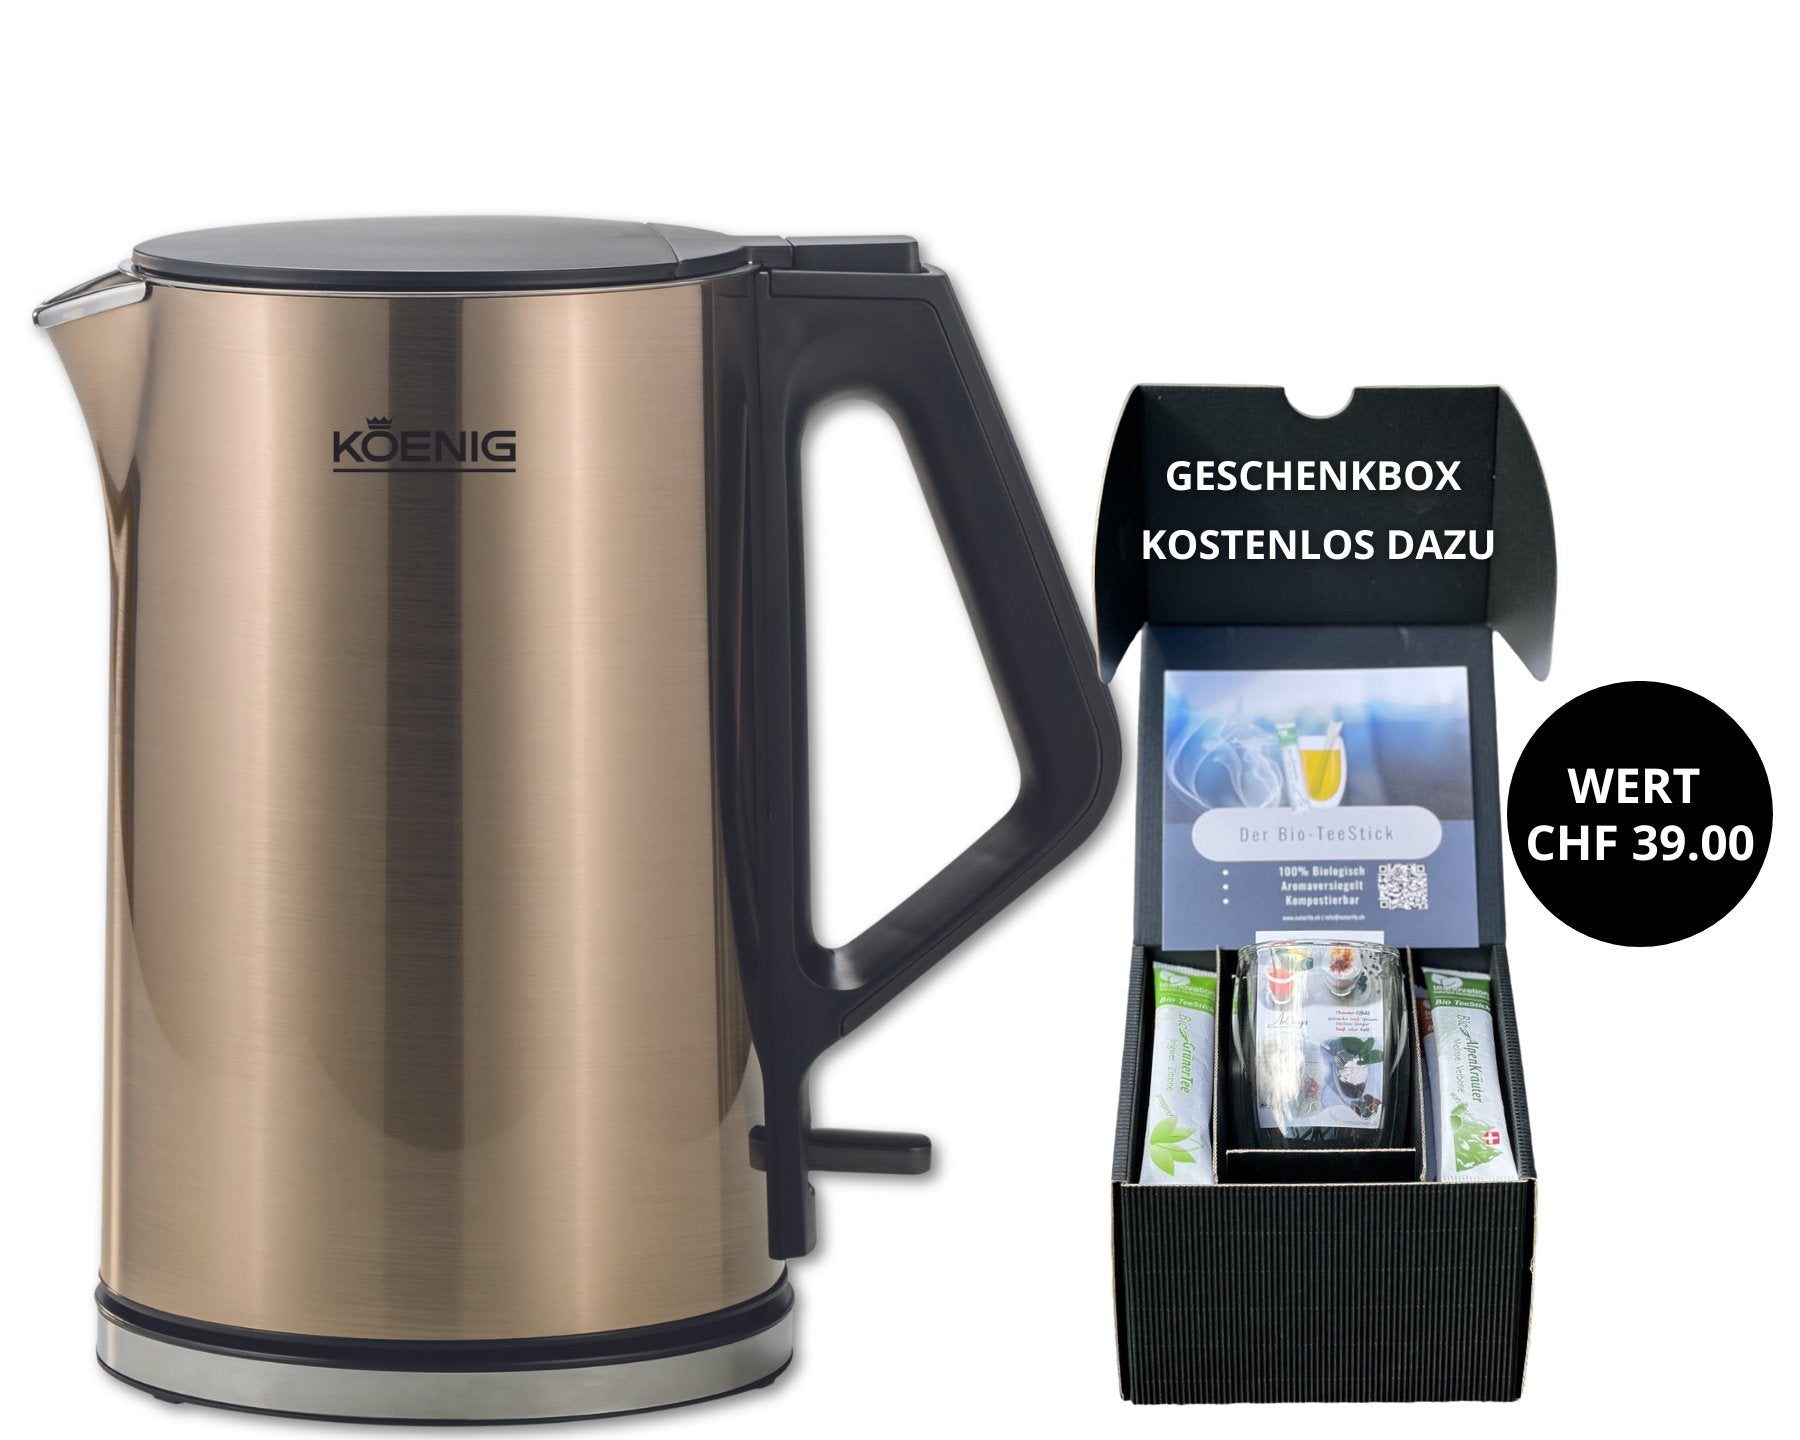 KOENIG Wasserkocher Cool Touch, 1,5 Liter + Geschenkbox - kitchen-more.ch, kostenloser Versand in der ganzen Schweiz